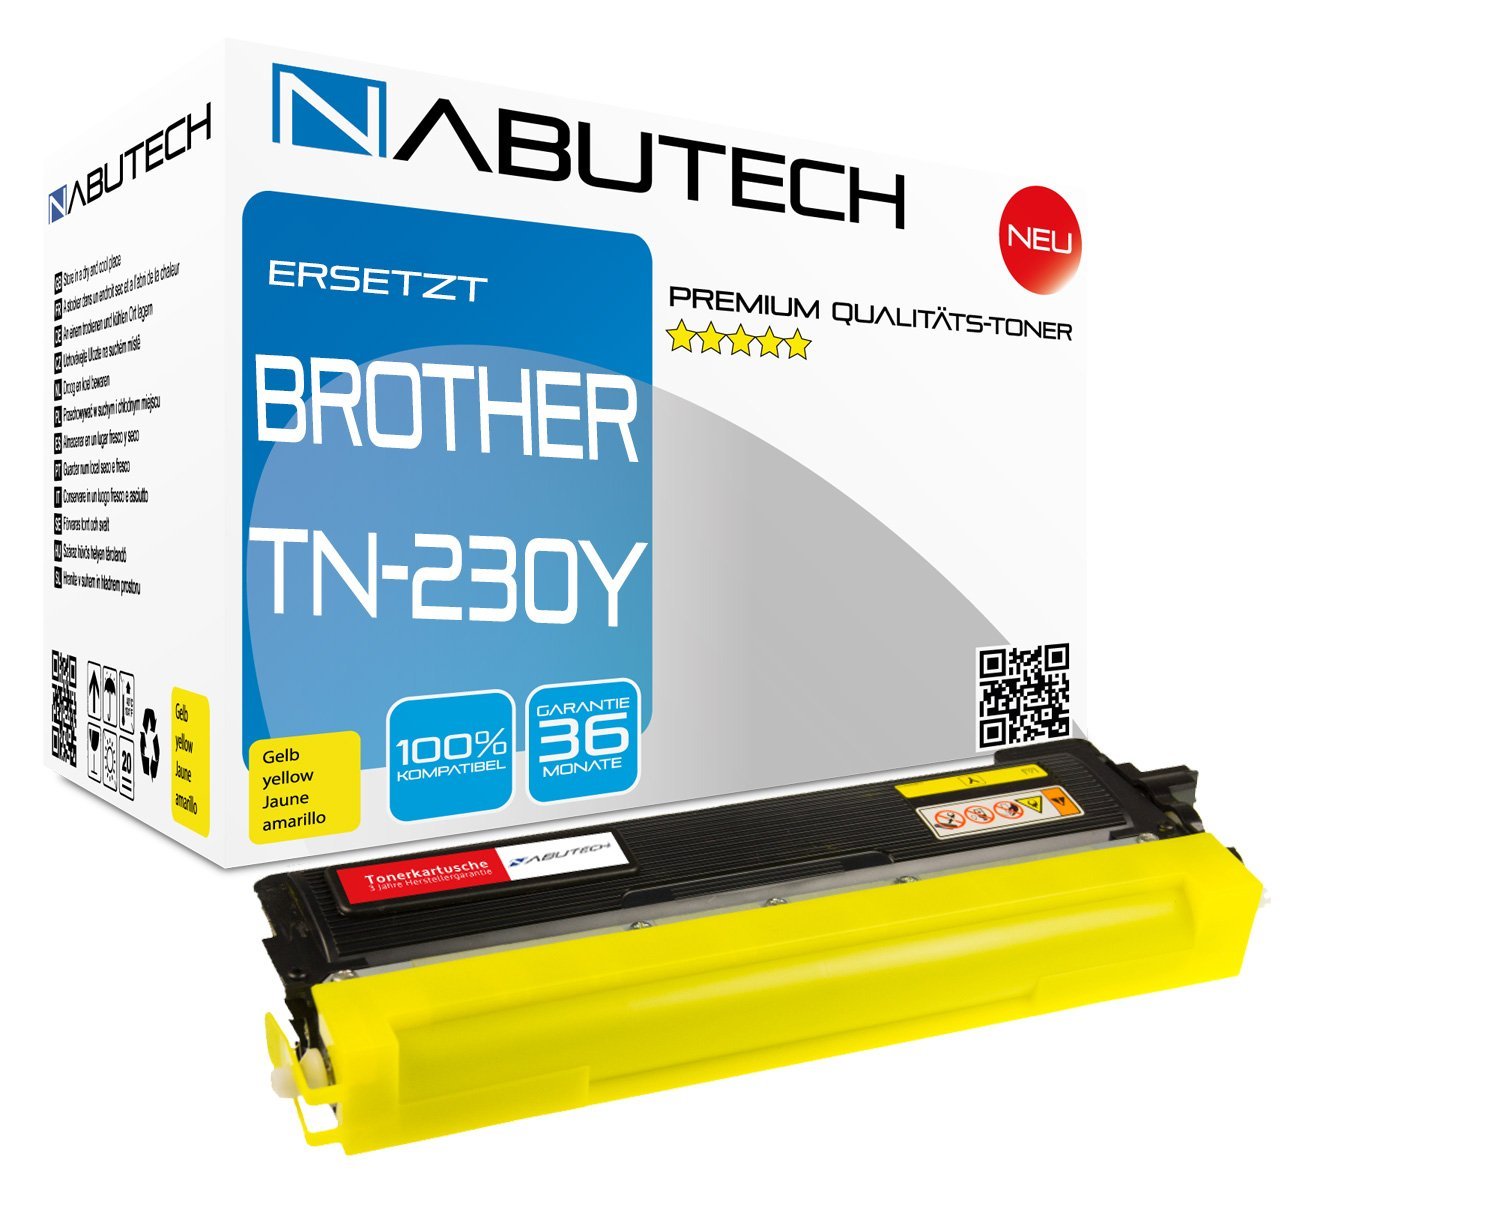 Schneider Printware Toner ersetzt Brother TN-230Y Yellow